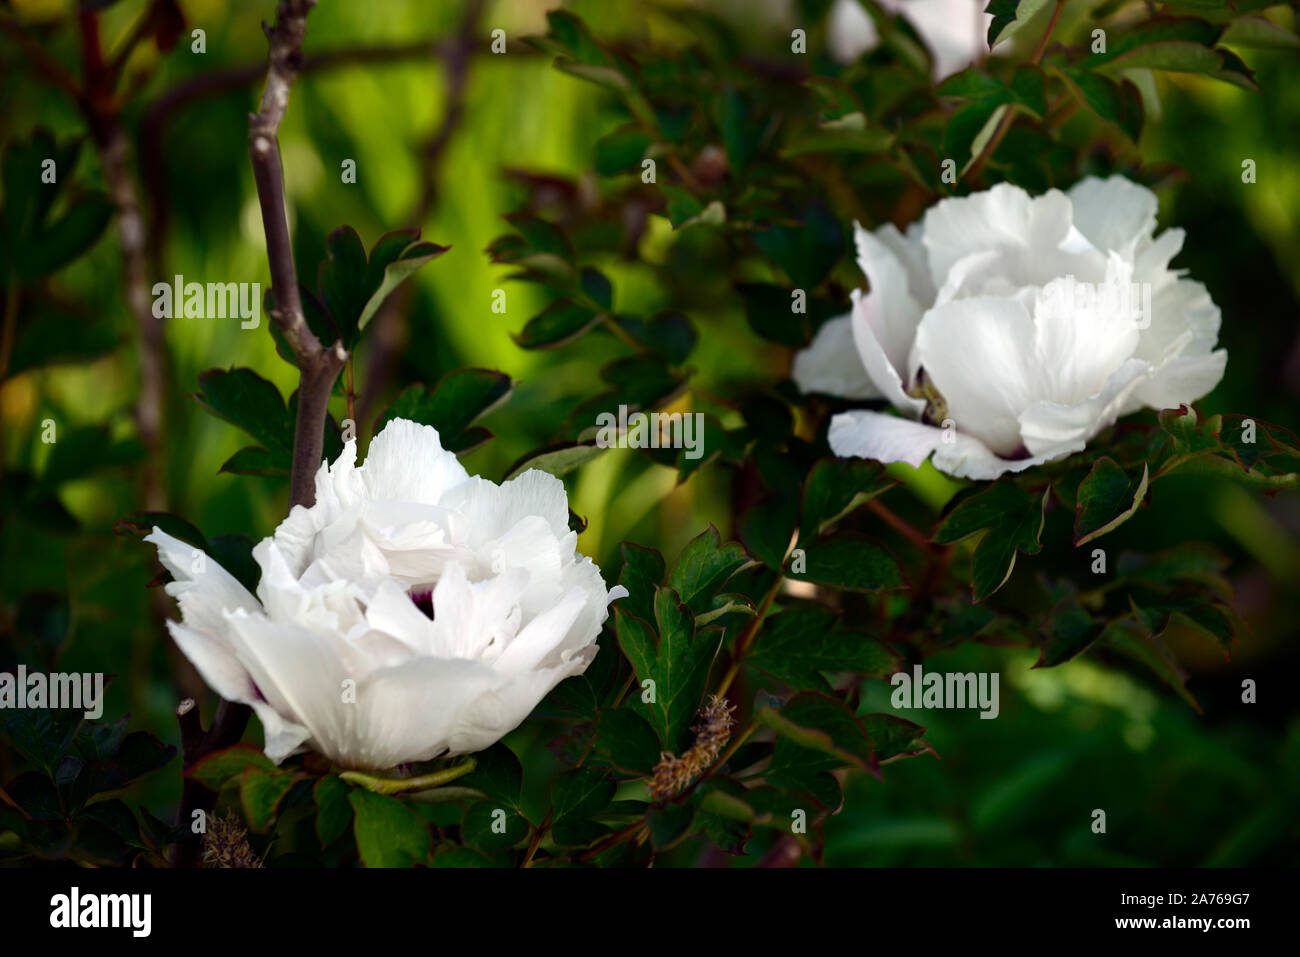 Paeonia suffruticosa Regno della luna, Gessekai,bianco fiori colorati,tree peony,la molla,giardino,giardino,RM Floral Foto Stock